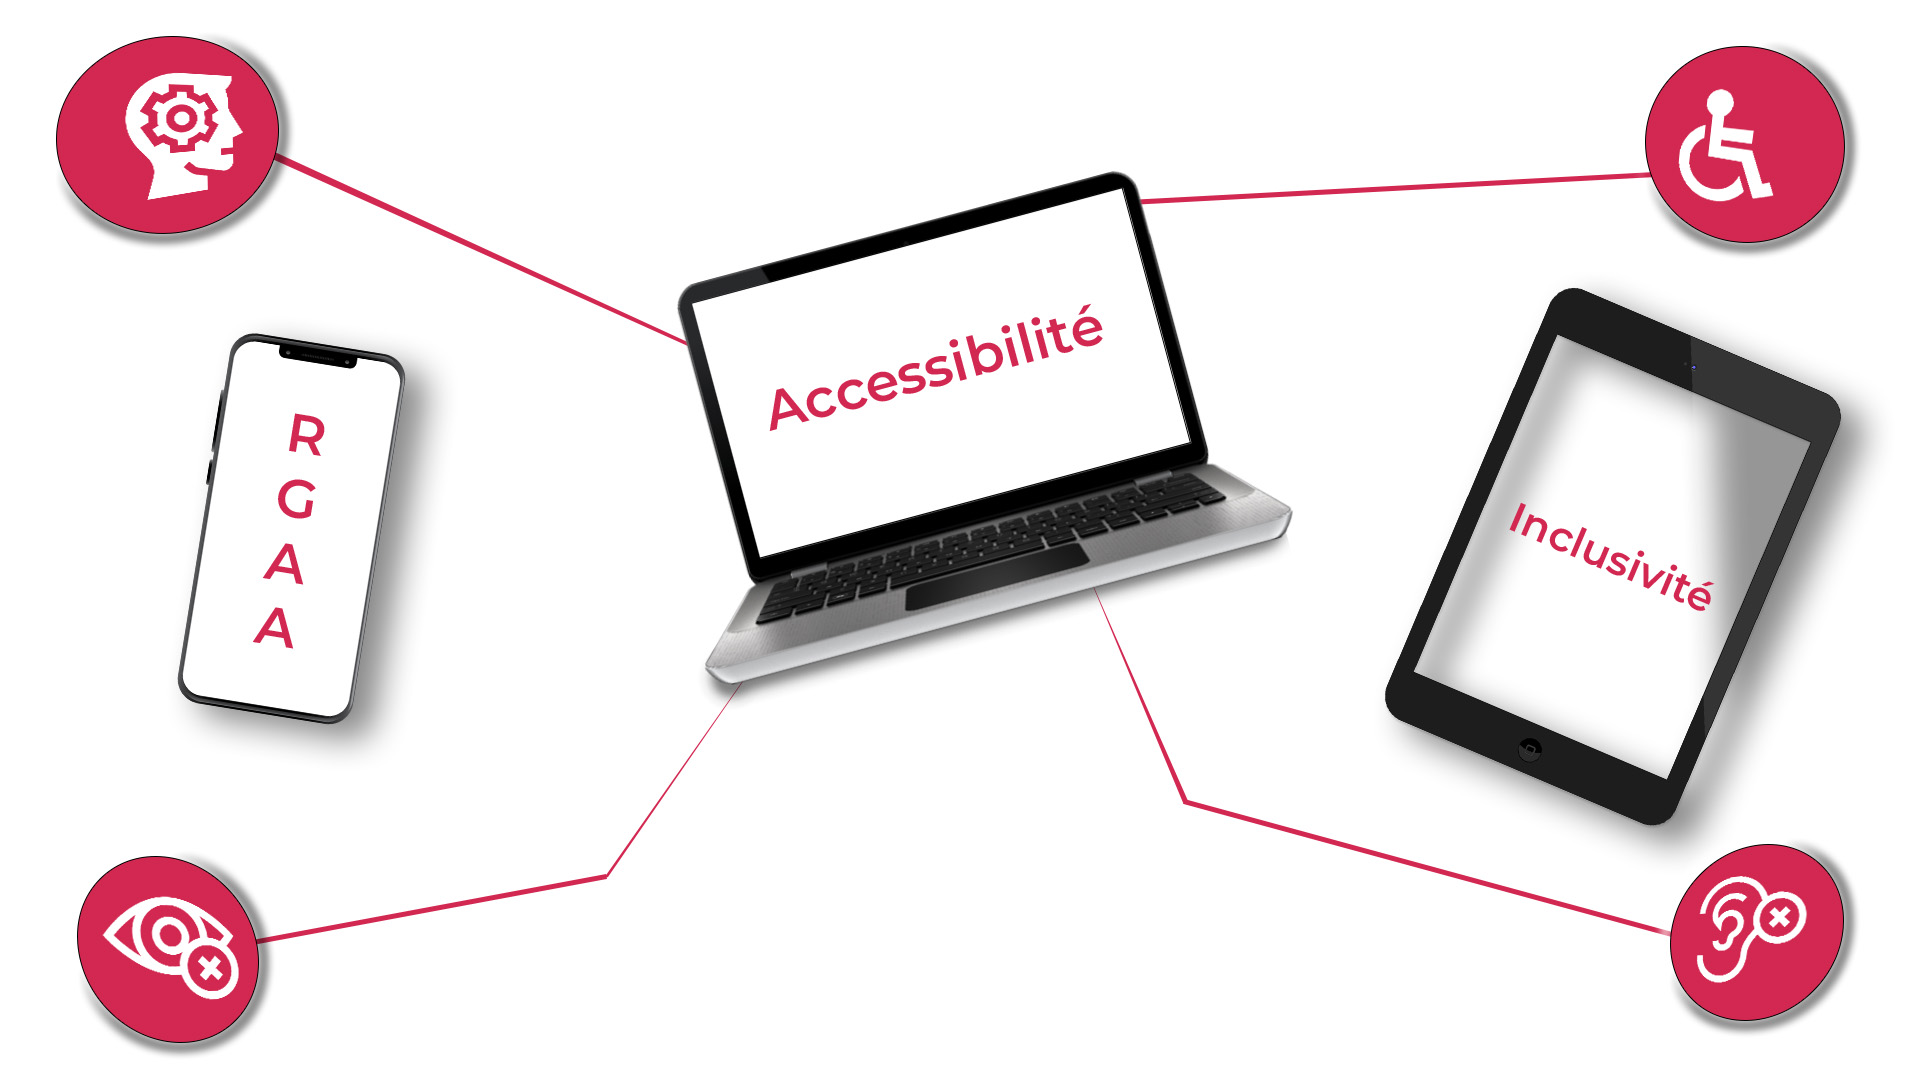 Illustration sur l'accessibilité - Inclusivité - RGAA : Handicap moteur, cognitif, visuel et auditif